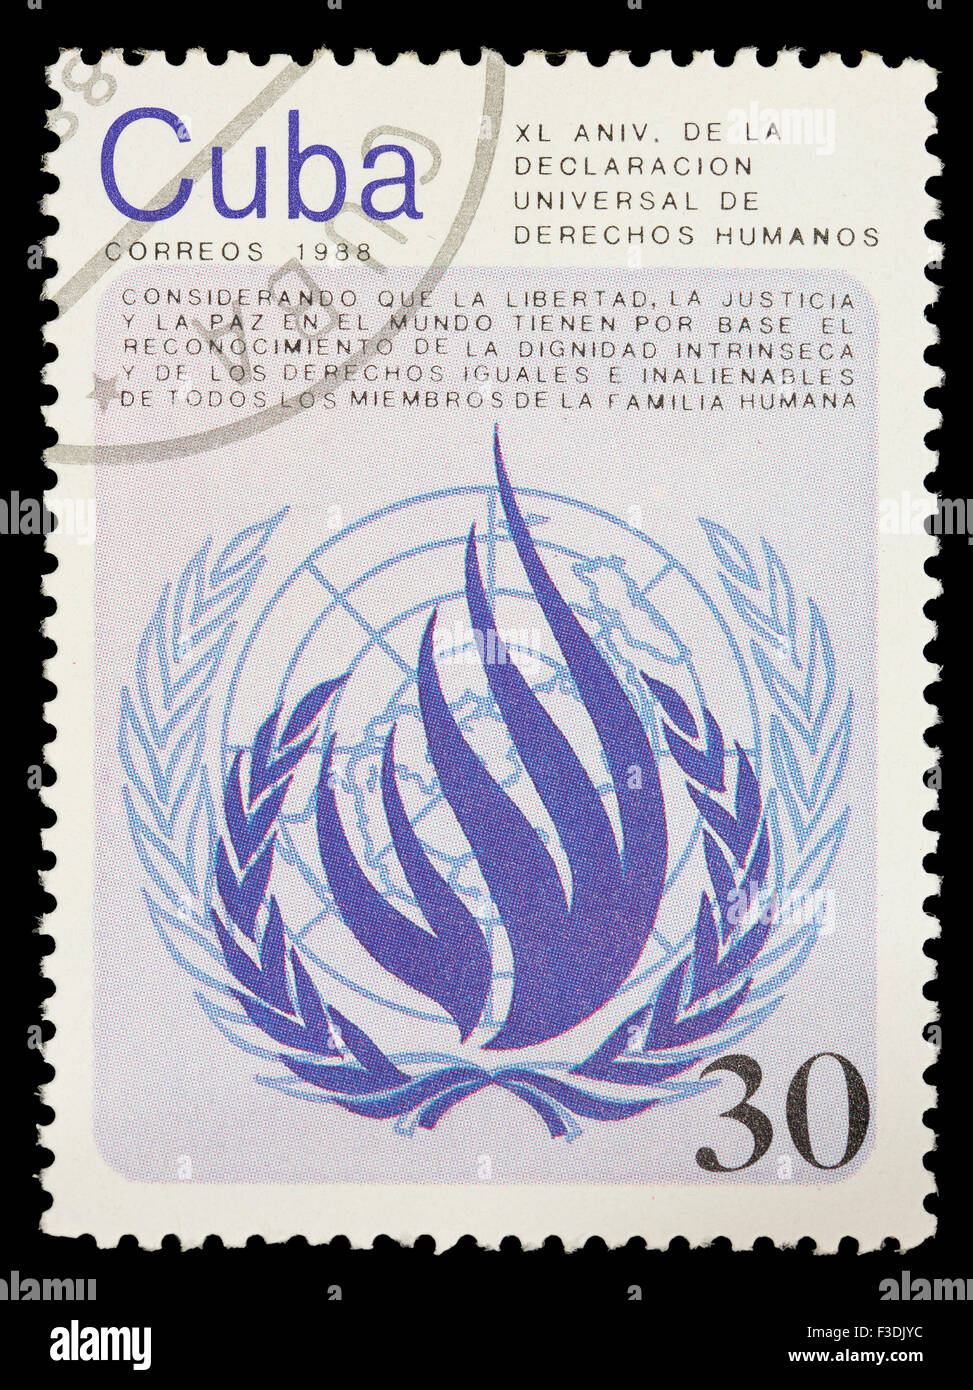 CUBA - circa 1988 : un timbre-poste imprimé en Cuba montre l'emblème de l'UNESCO pour les droits de l'homme, vers 1988 Banque D'Images